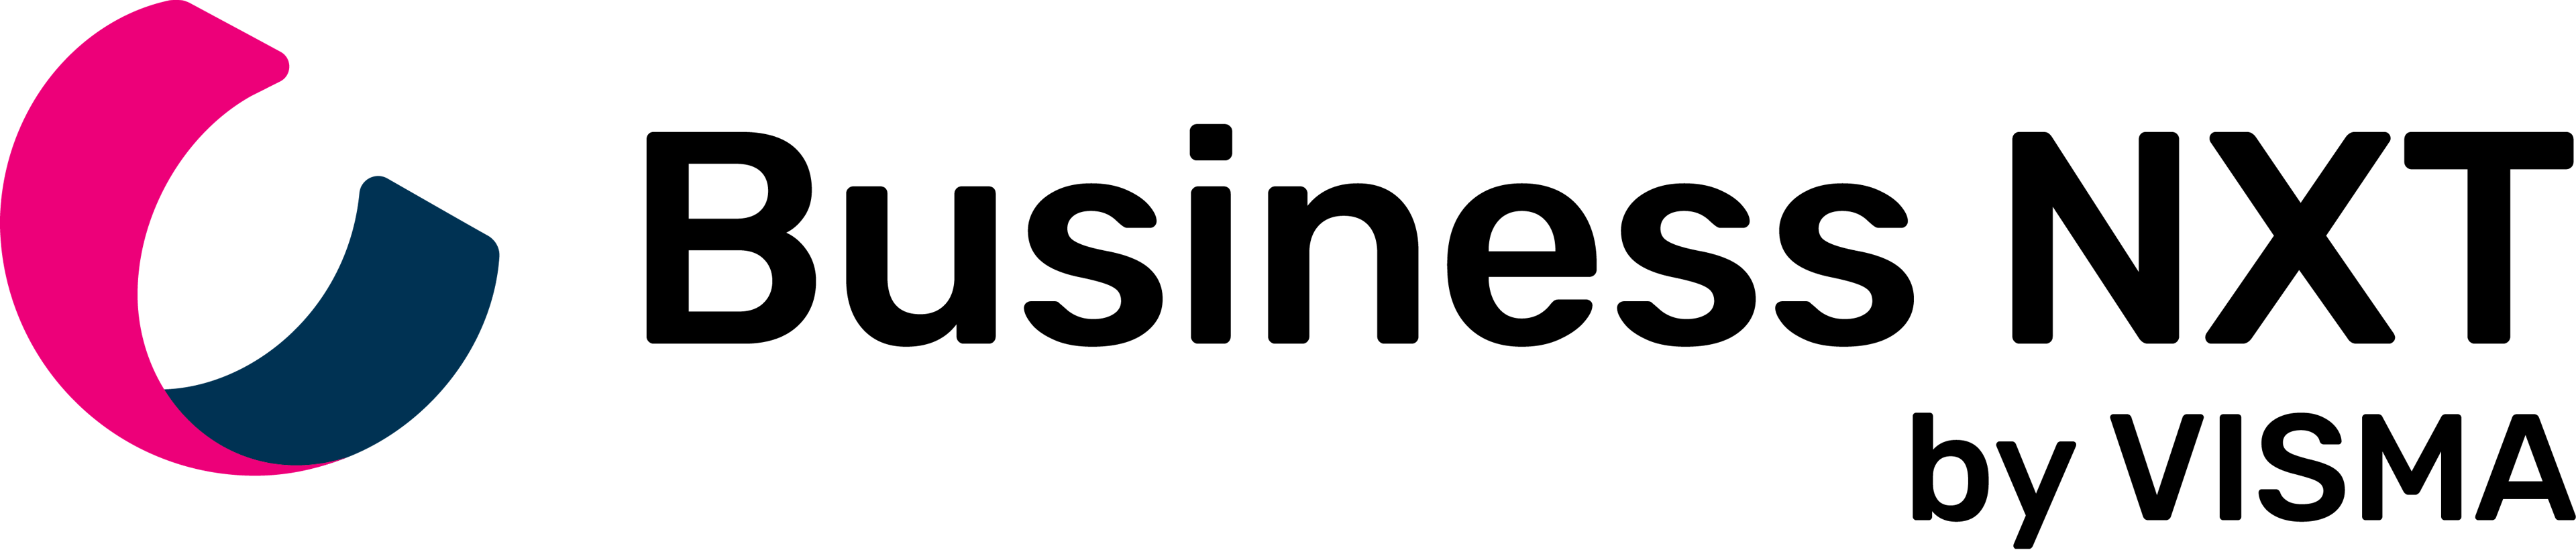 Business NXT logoen